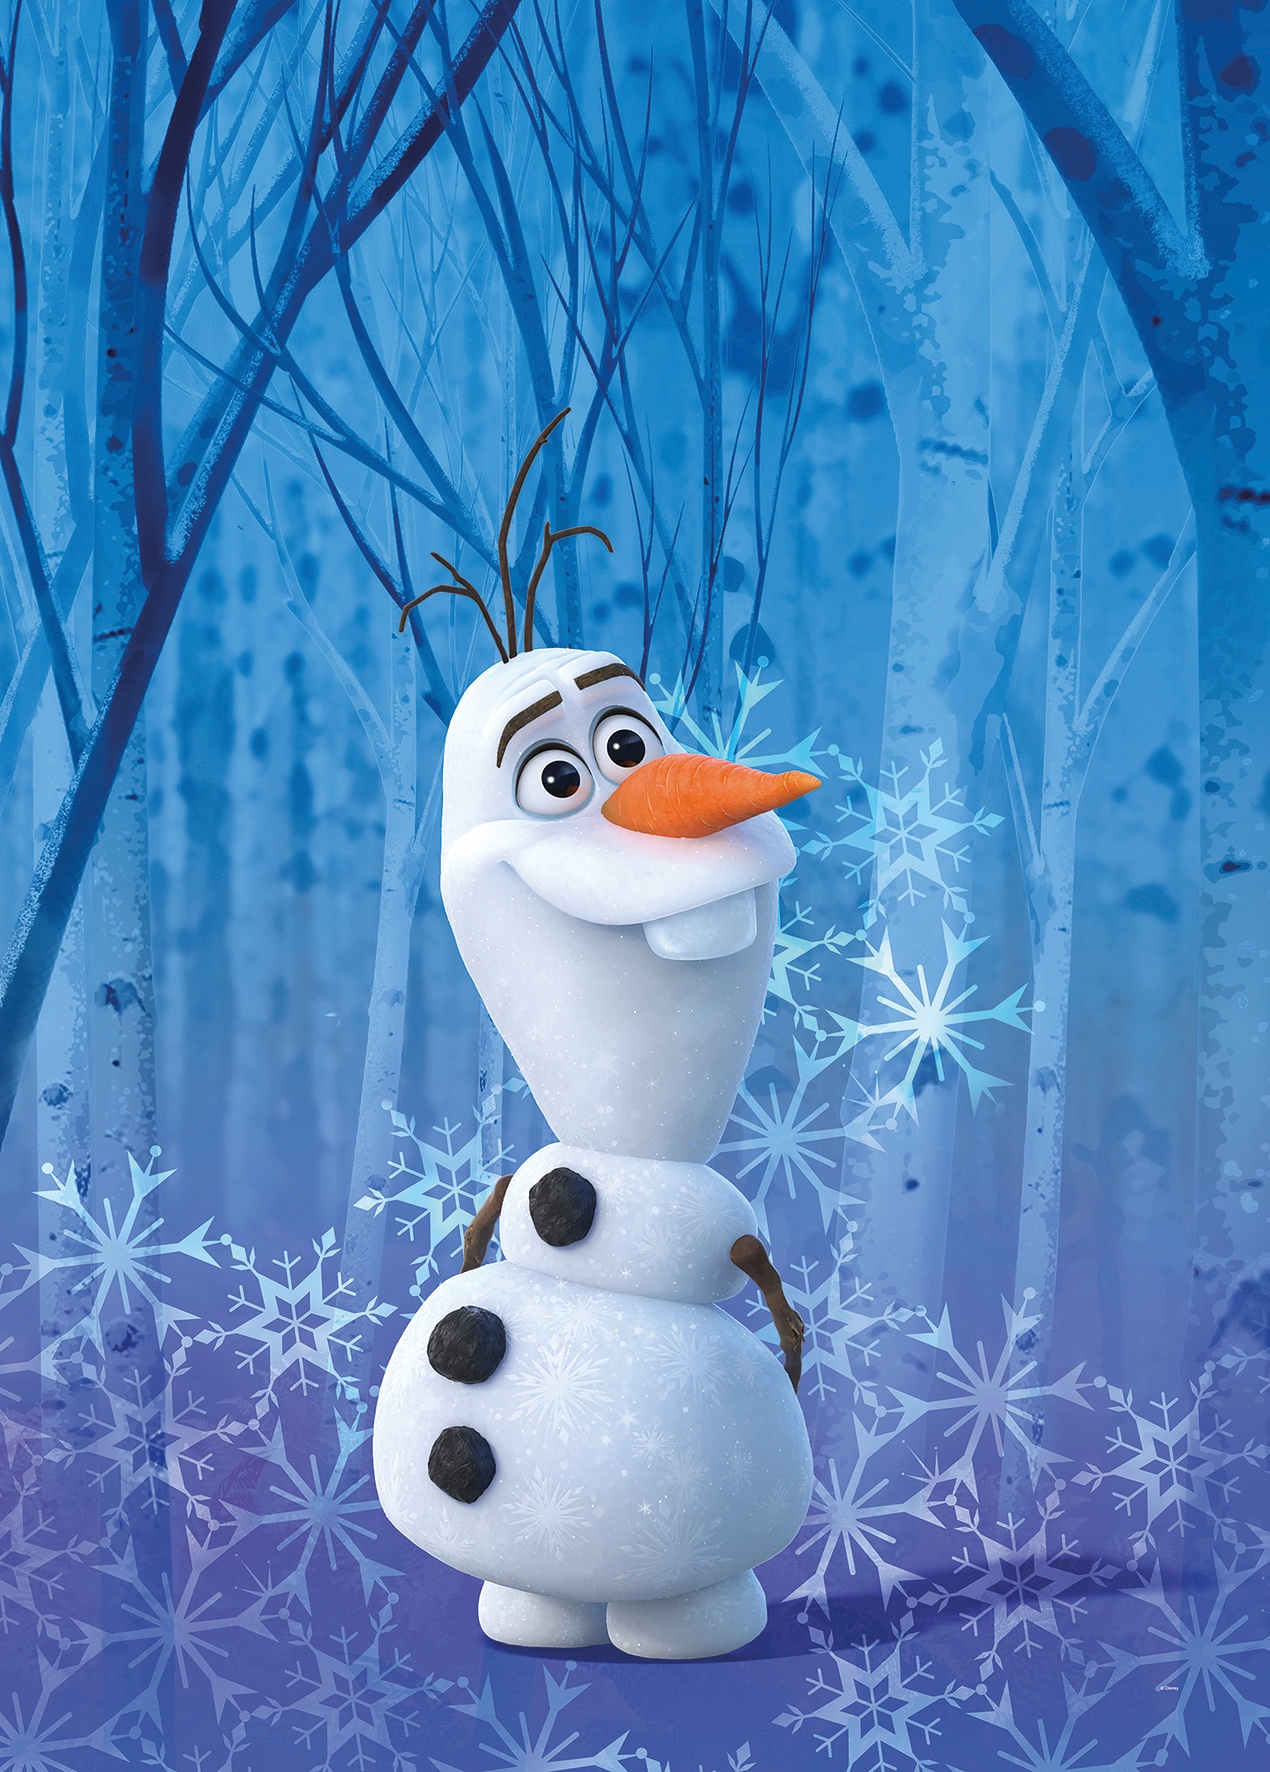 Komar Poster »Frozen Olaf Crystal«, Disney, (1 St.), Kinderzimmer, Schlafzimmer, Wohnzimmer